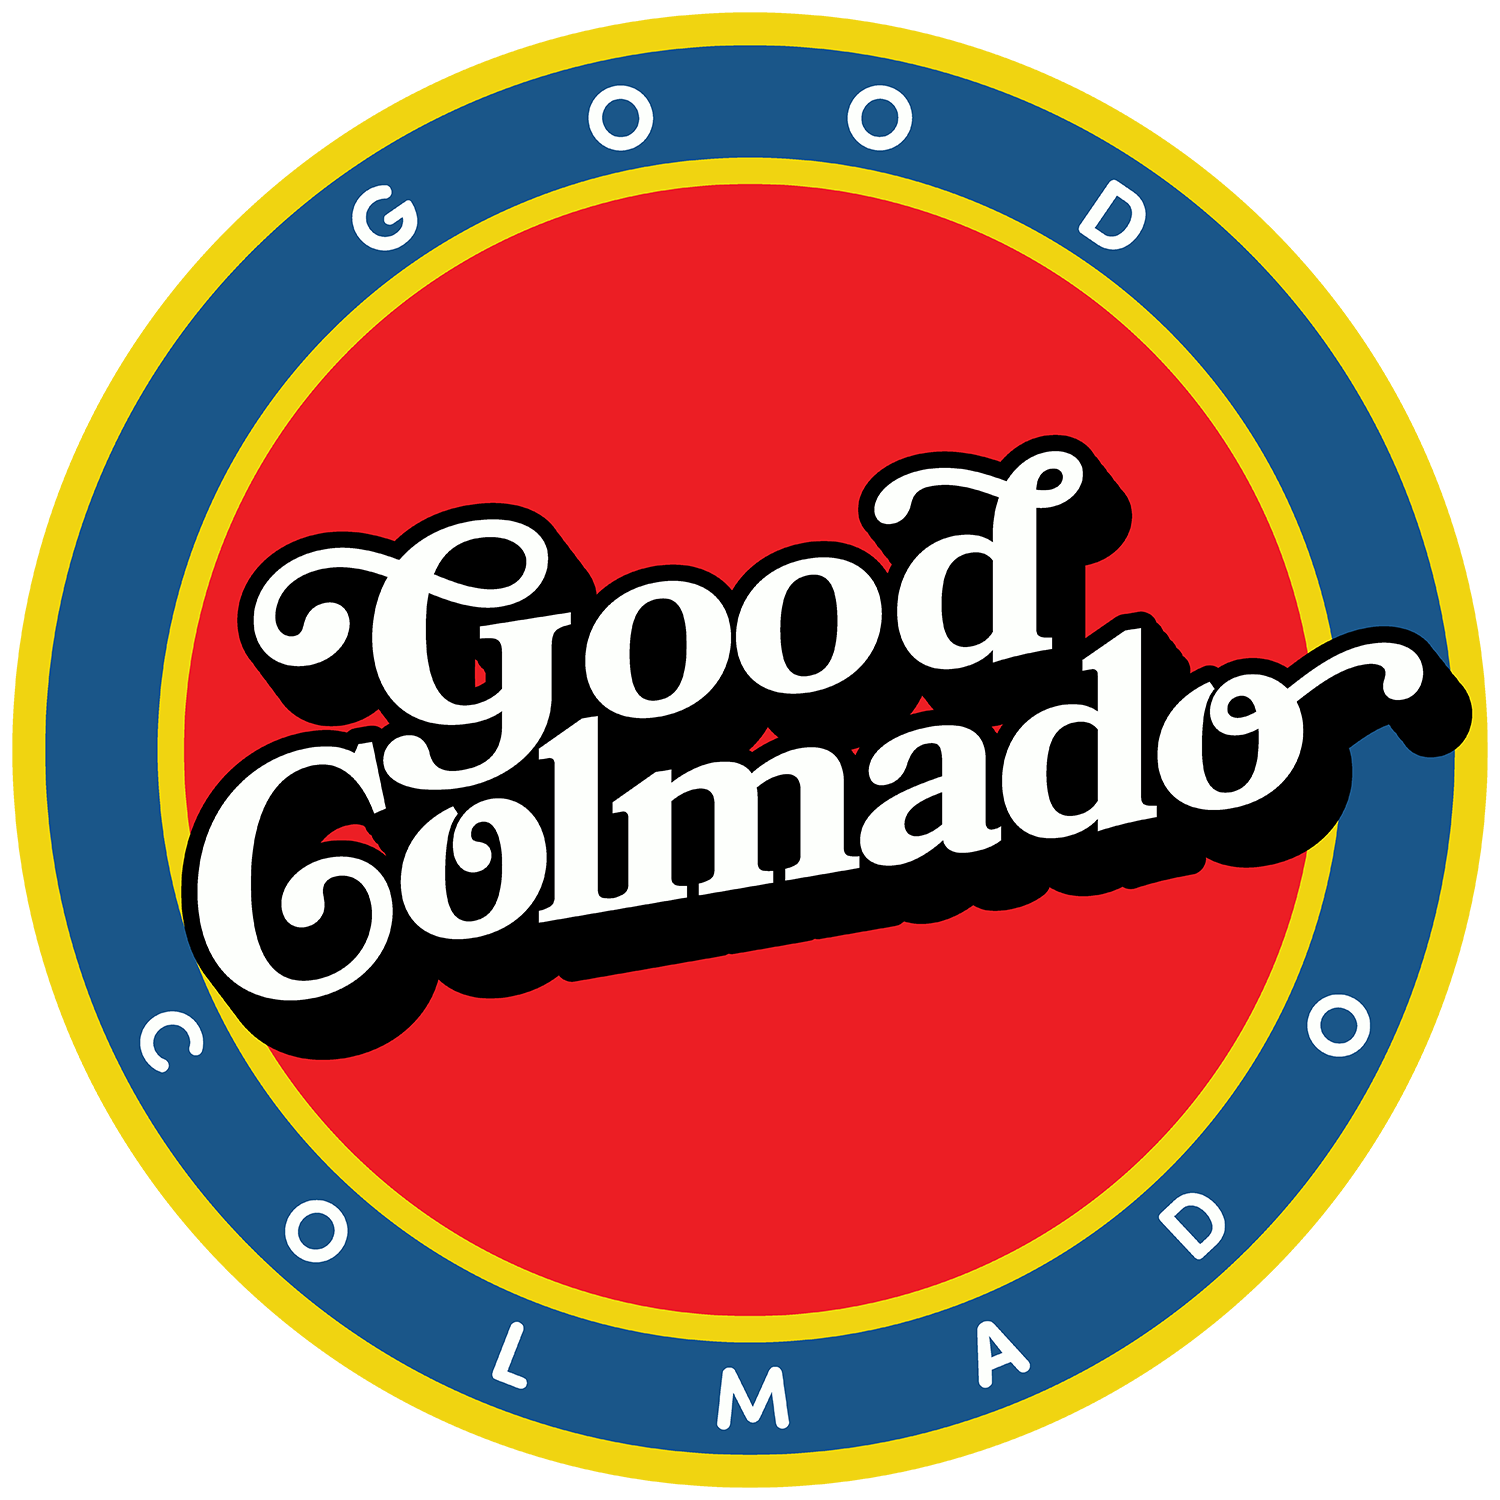 Good Colmado